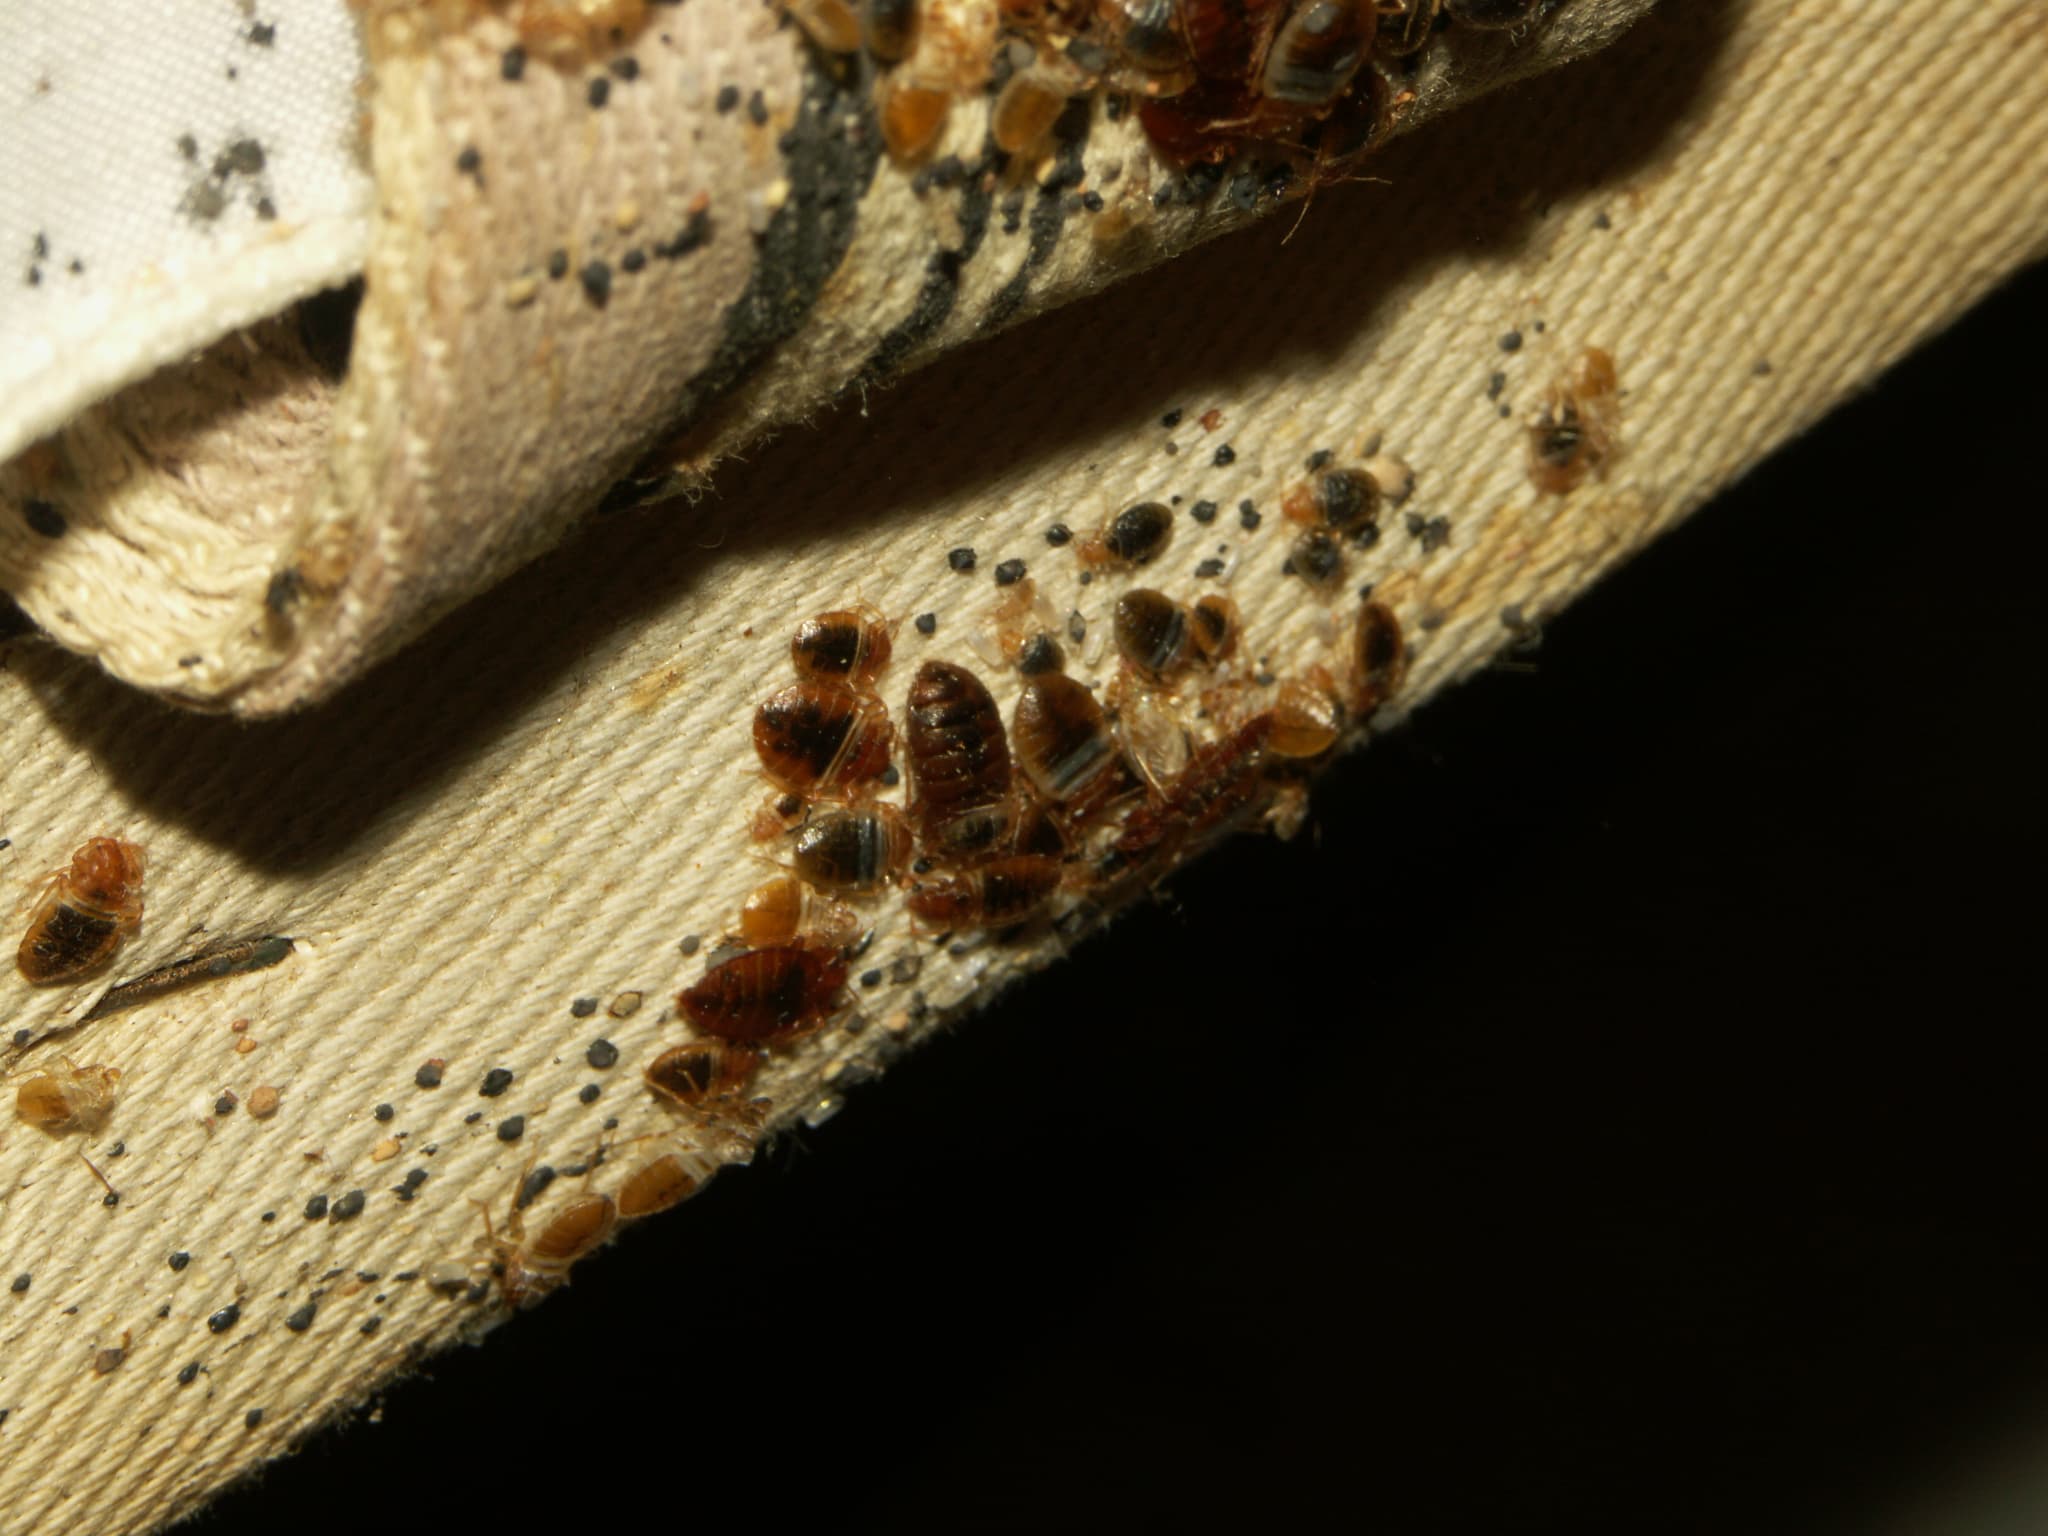 Punaises de lit, cafards : alerte sur les dangers d'un insecticide